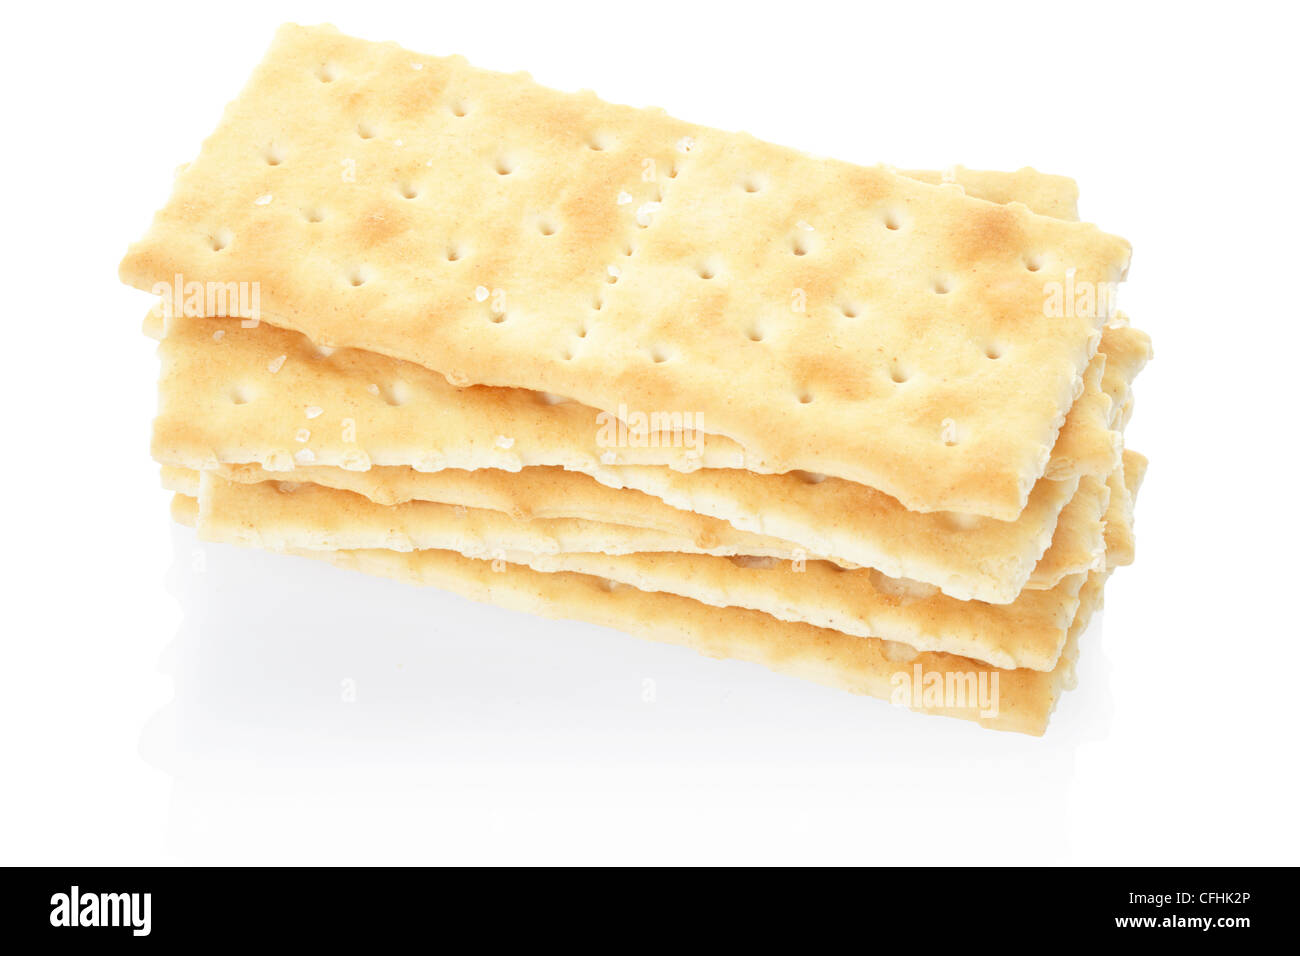 Crackers pile Stock Photo